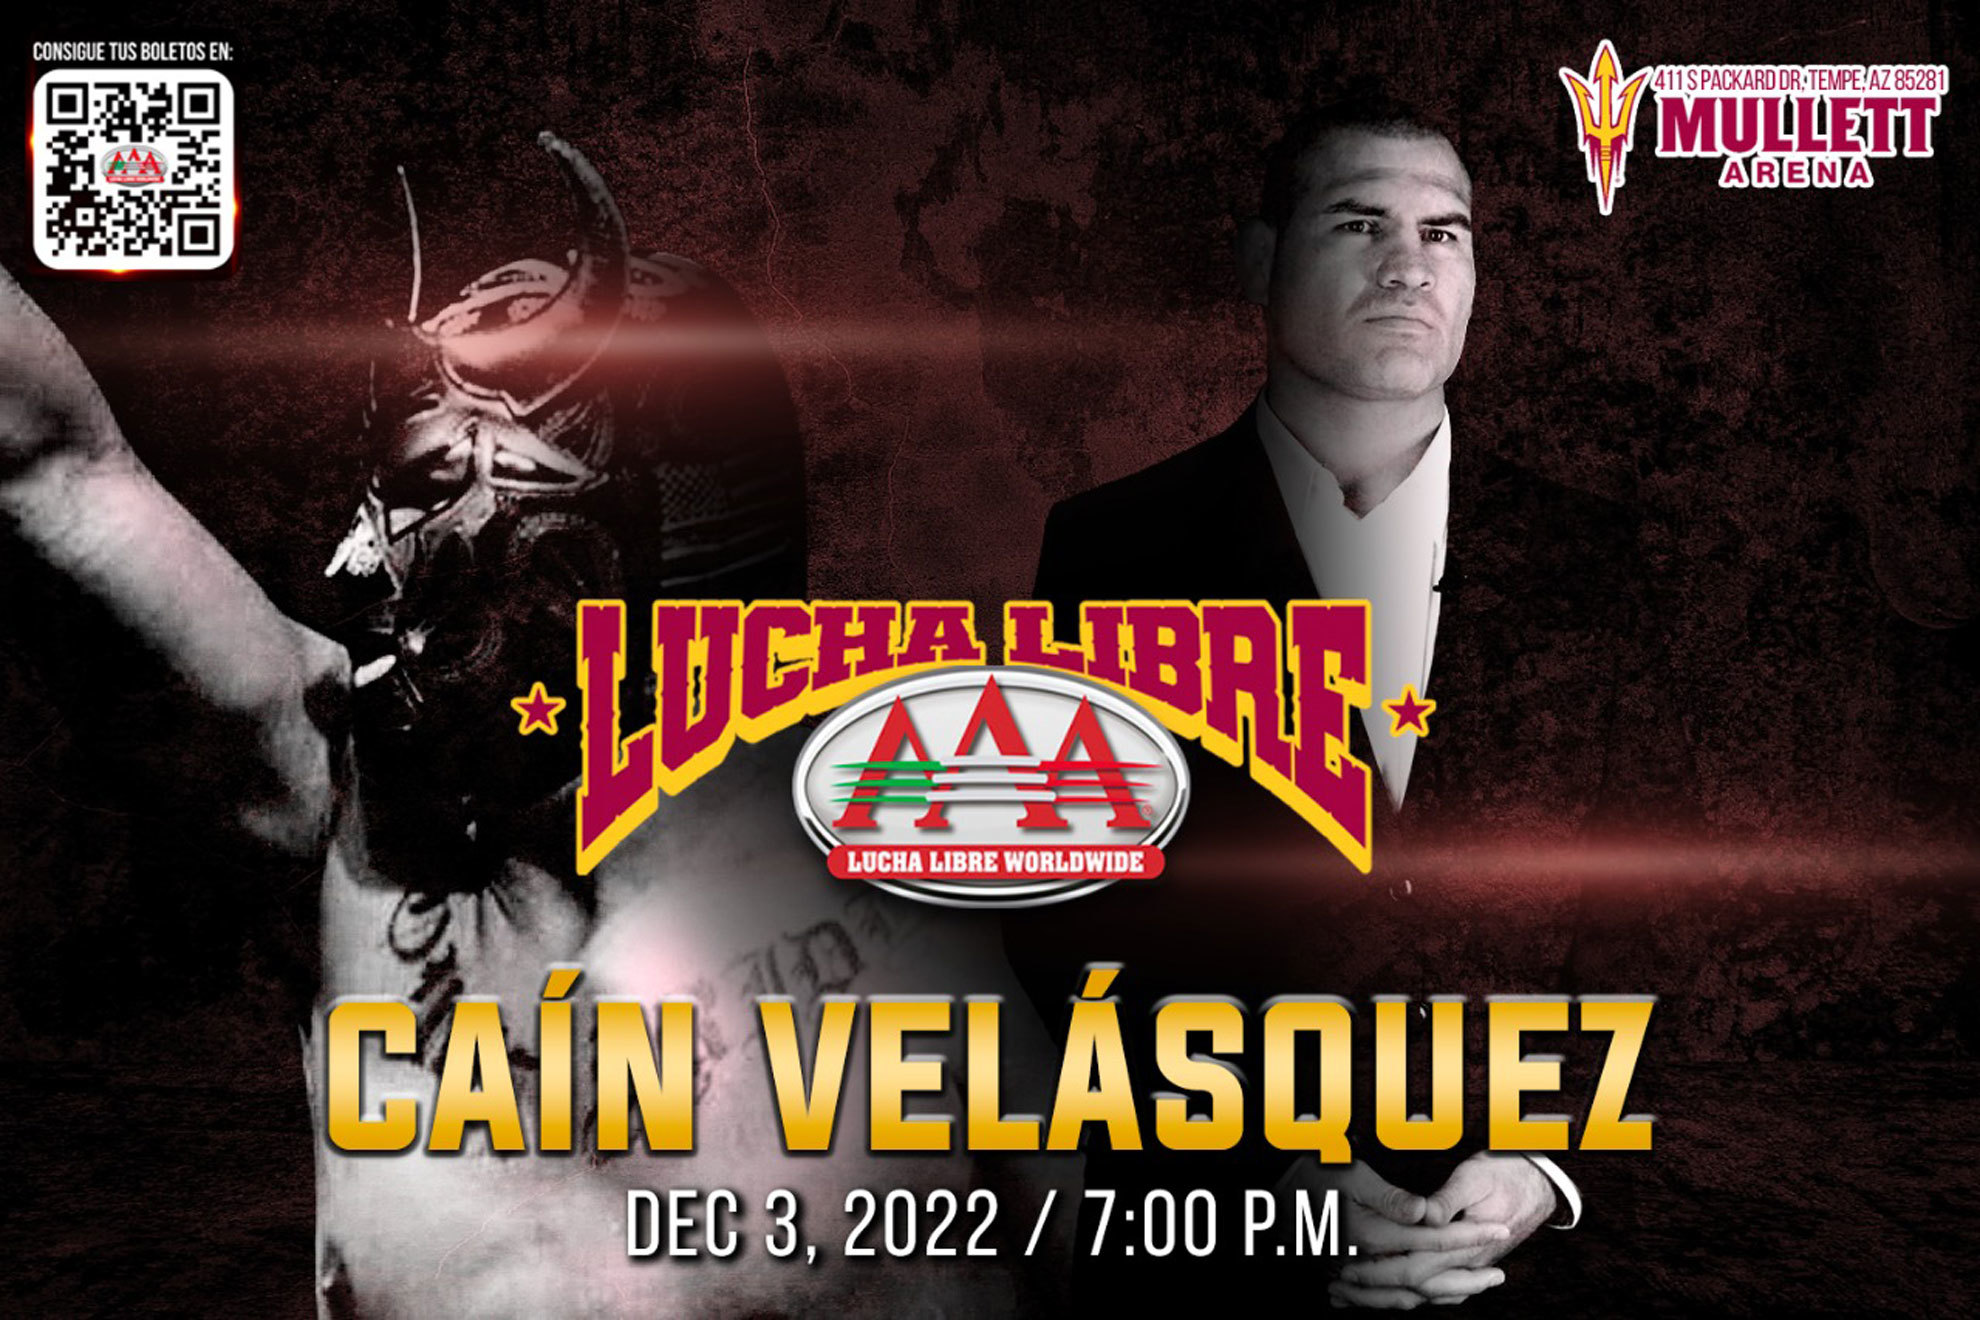 Cain Velasquez regresa a la lucha libre. | @luchalibreaaa